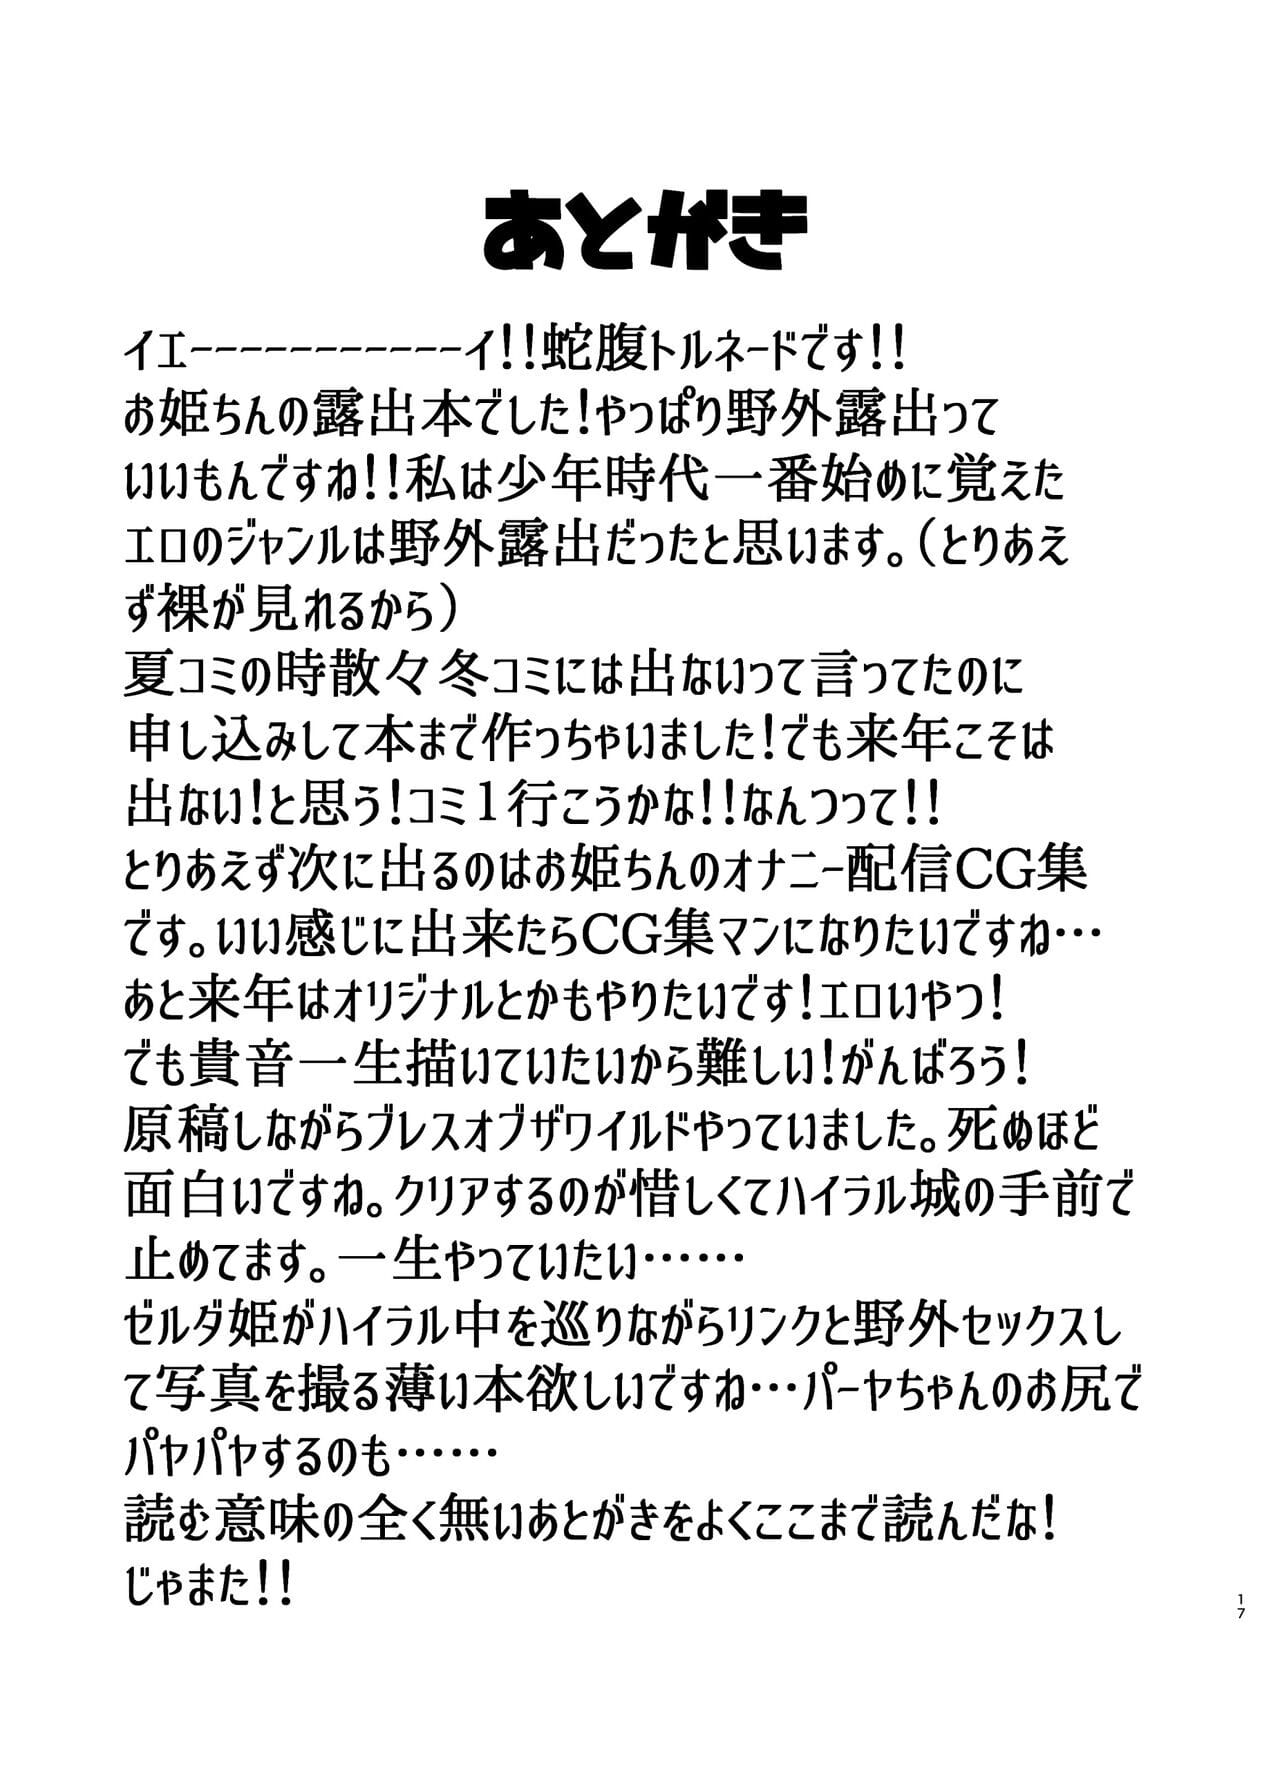 roshutsu uraaka kikou page 1